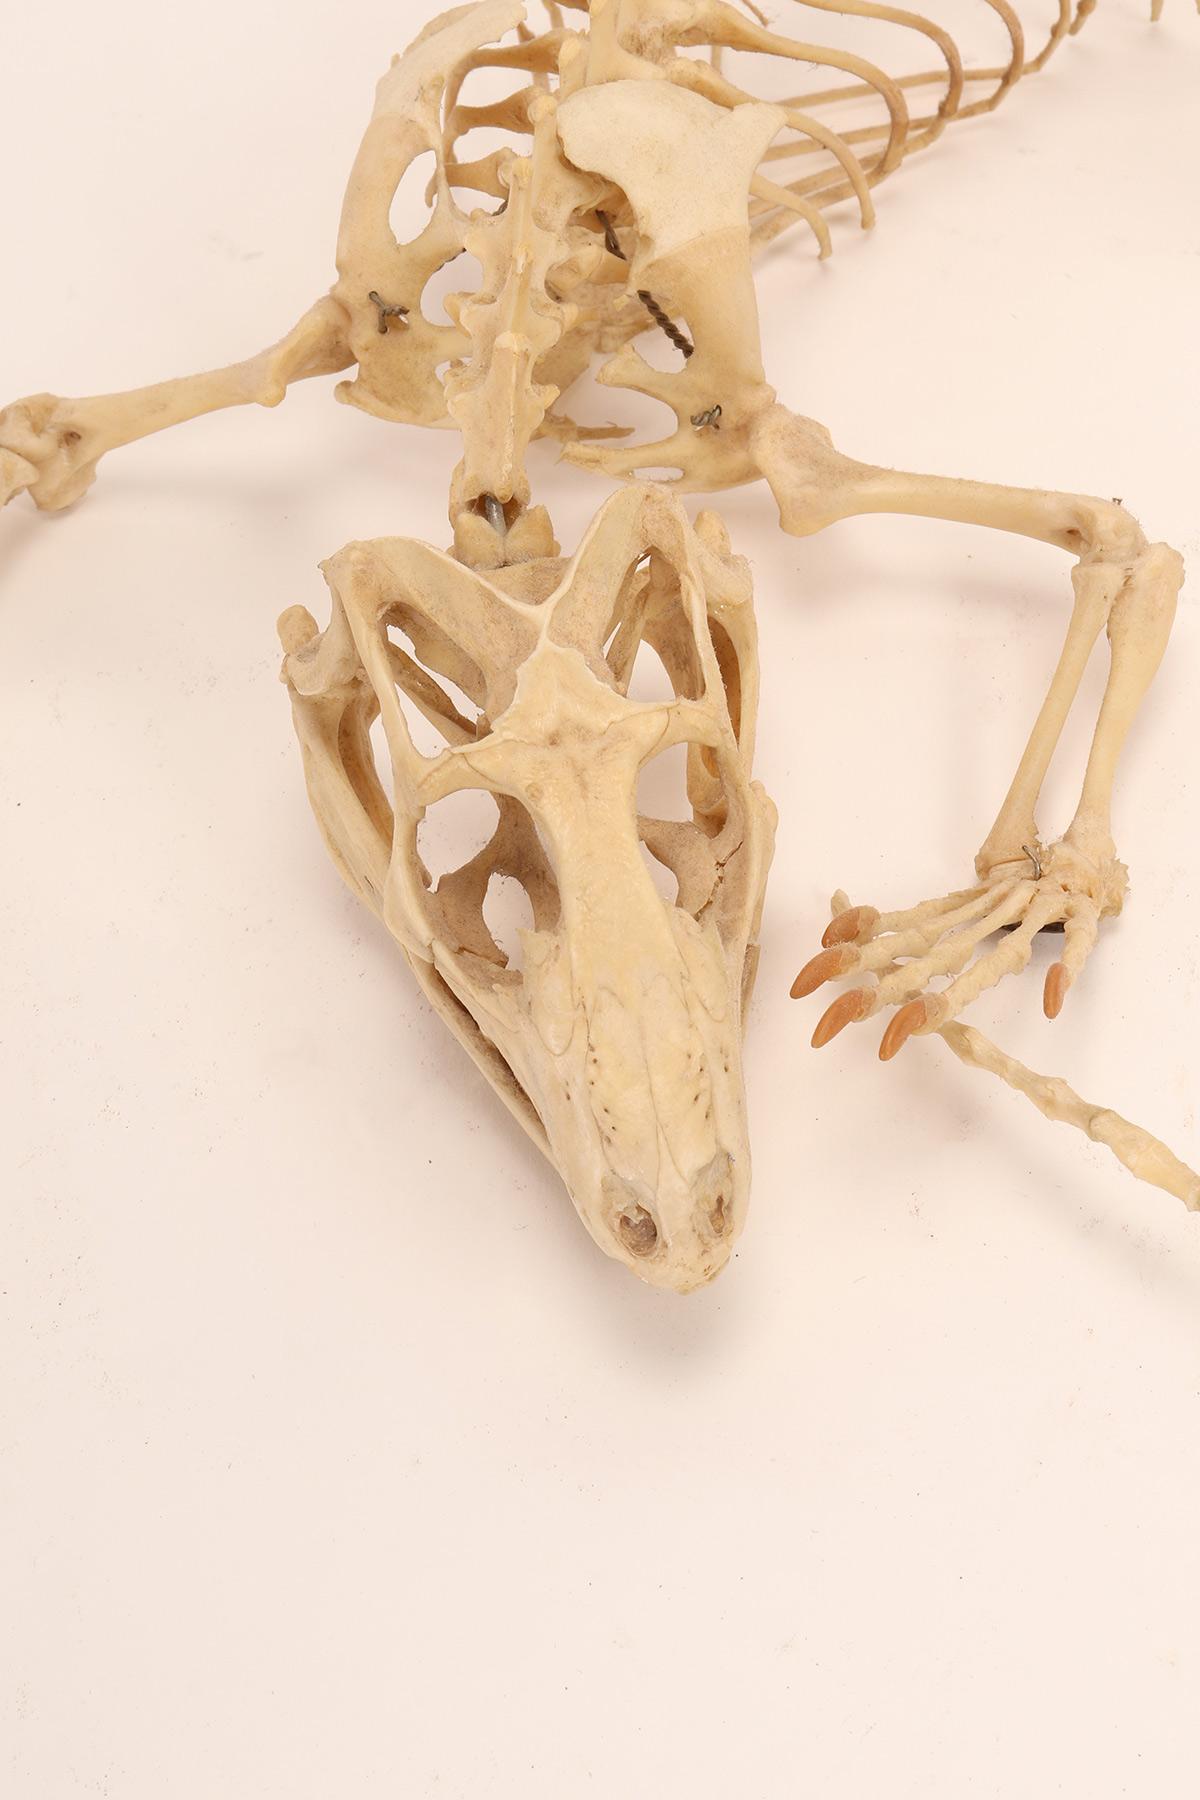 esqueleto de iguana